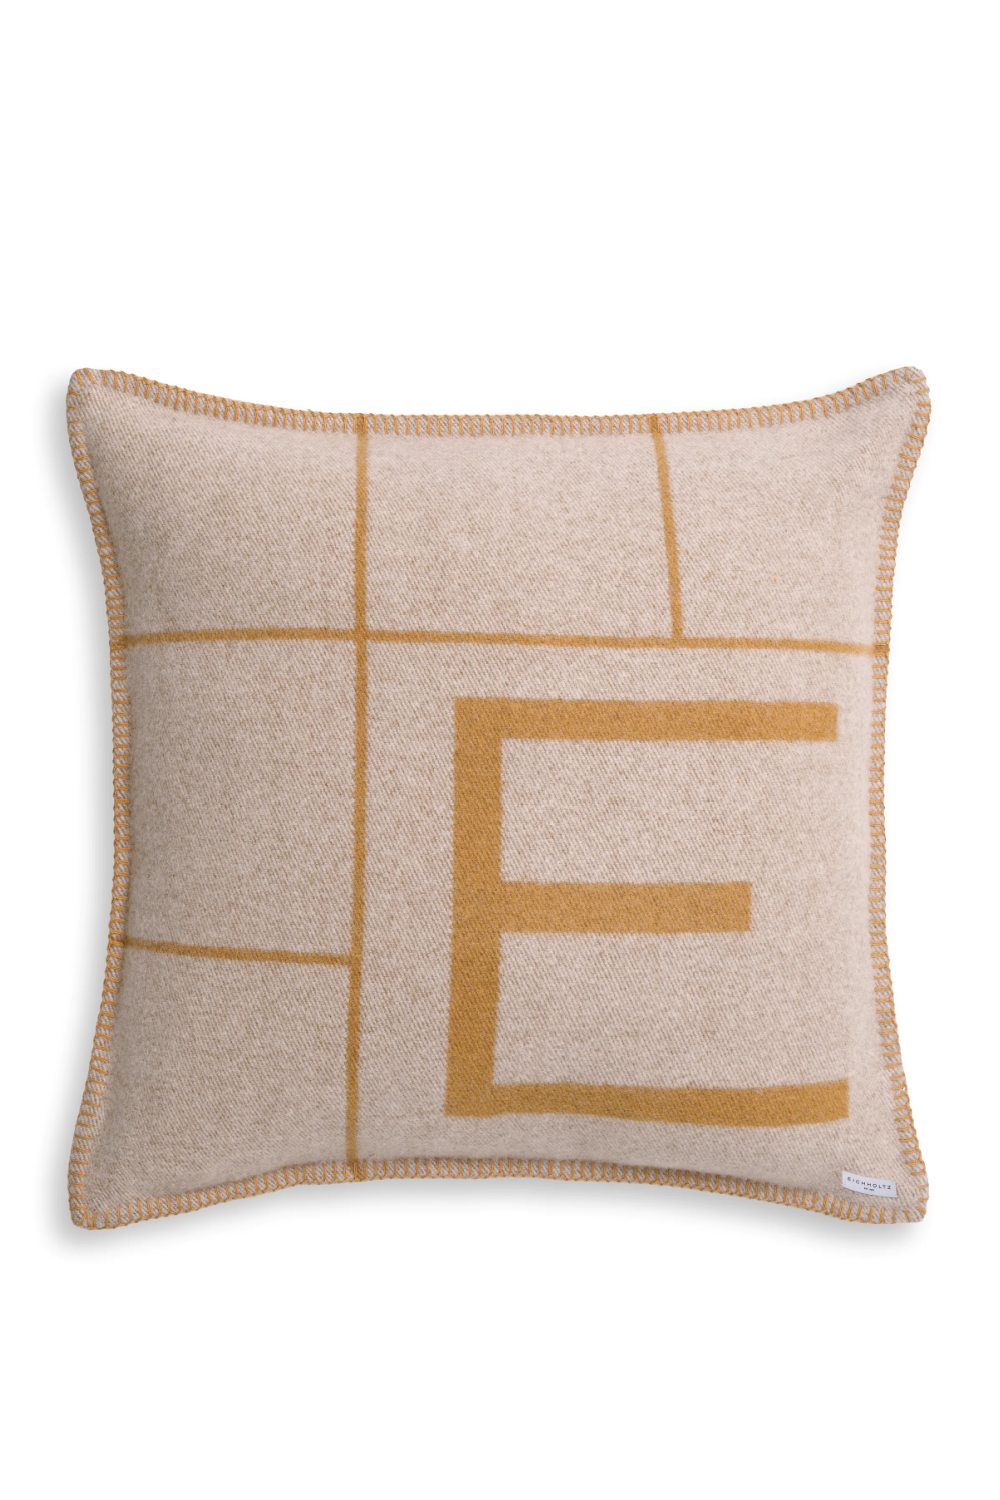 Hemstitch Wool Cushion S | Eichholtz Rhoda | Oroa.com